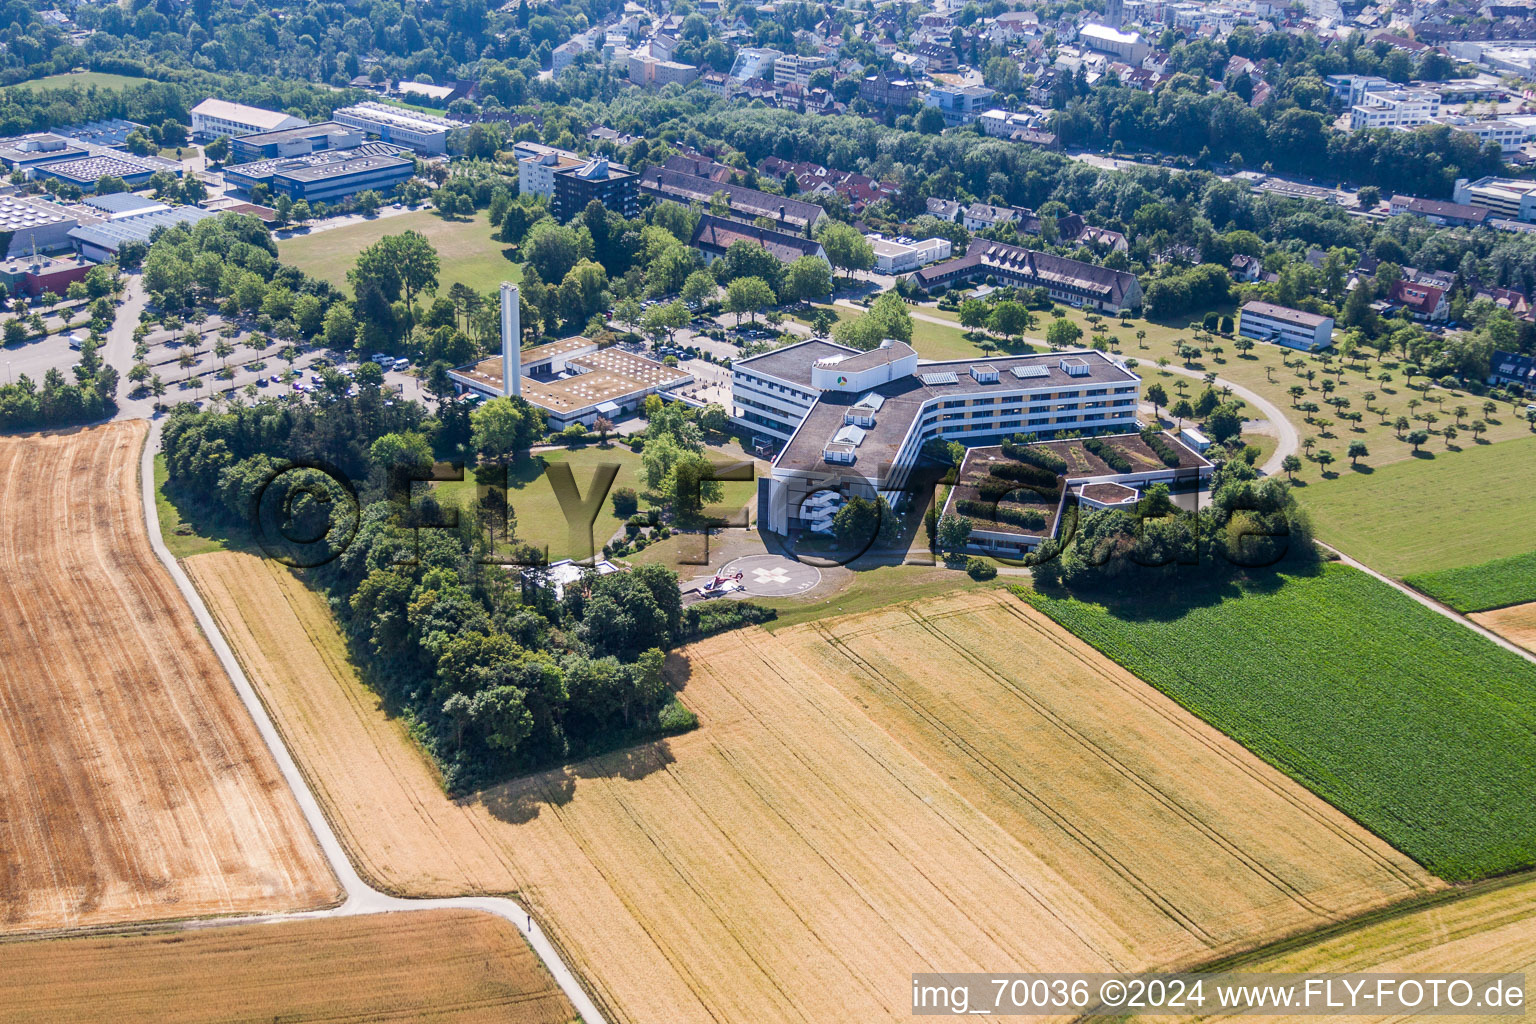 Vue aérienne de Terrain clinique de l'hôpital de district à Leonberg dans le département Bade-Wurtemberg, Allemagne